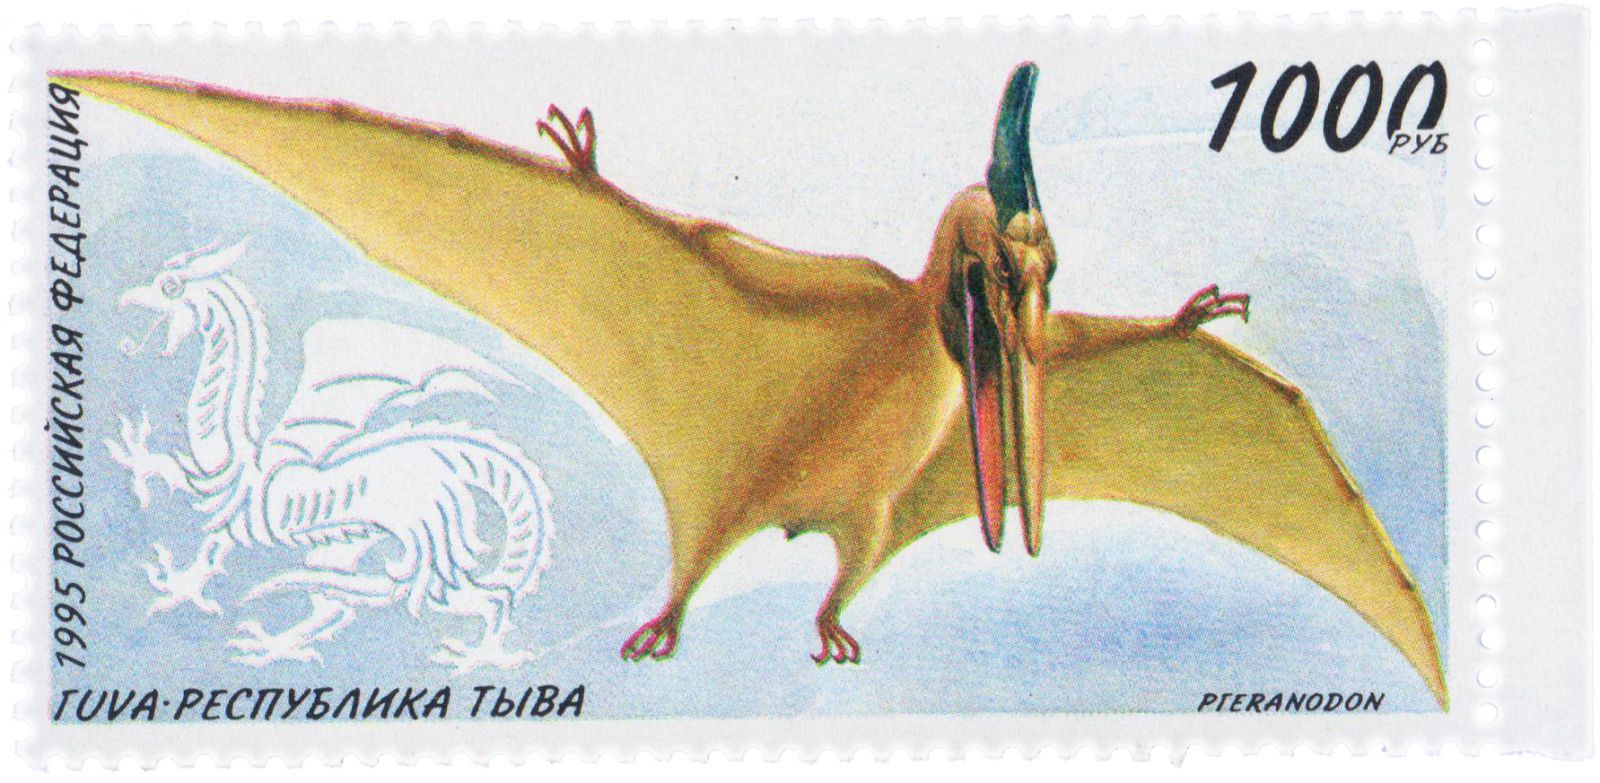 Тува Тыва Фальсификат подделка почтовая марка 1995 динозавры